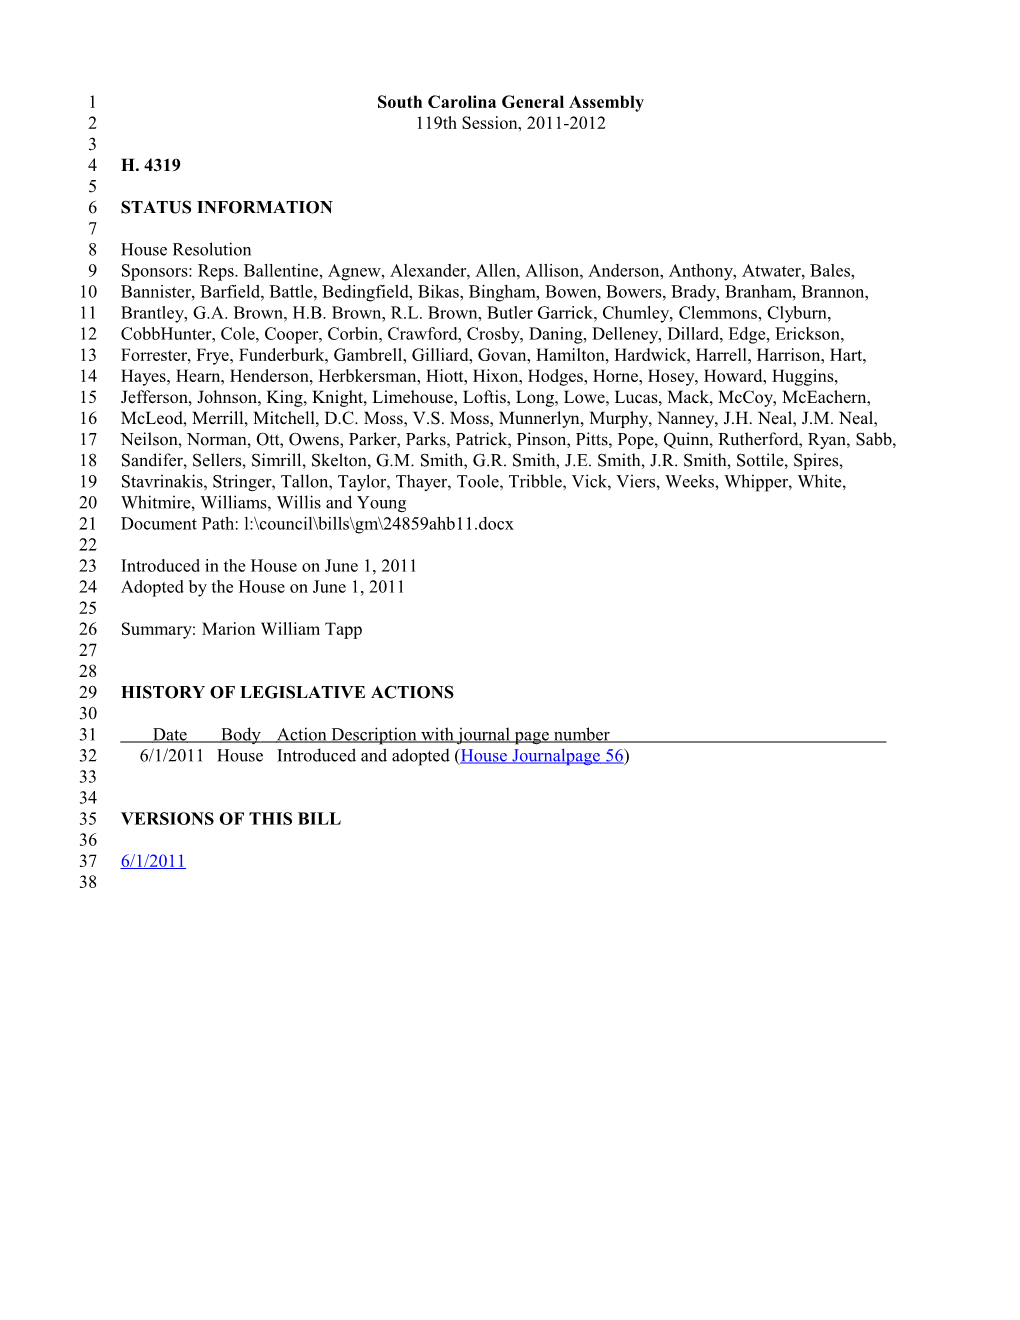 2011-2012 Bill 4319: Marion William Tapp - South Carolina Legislature Online